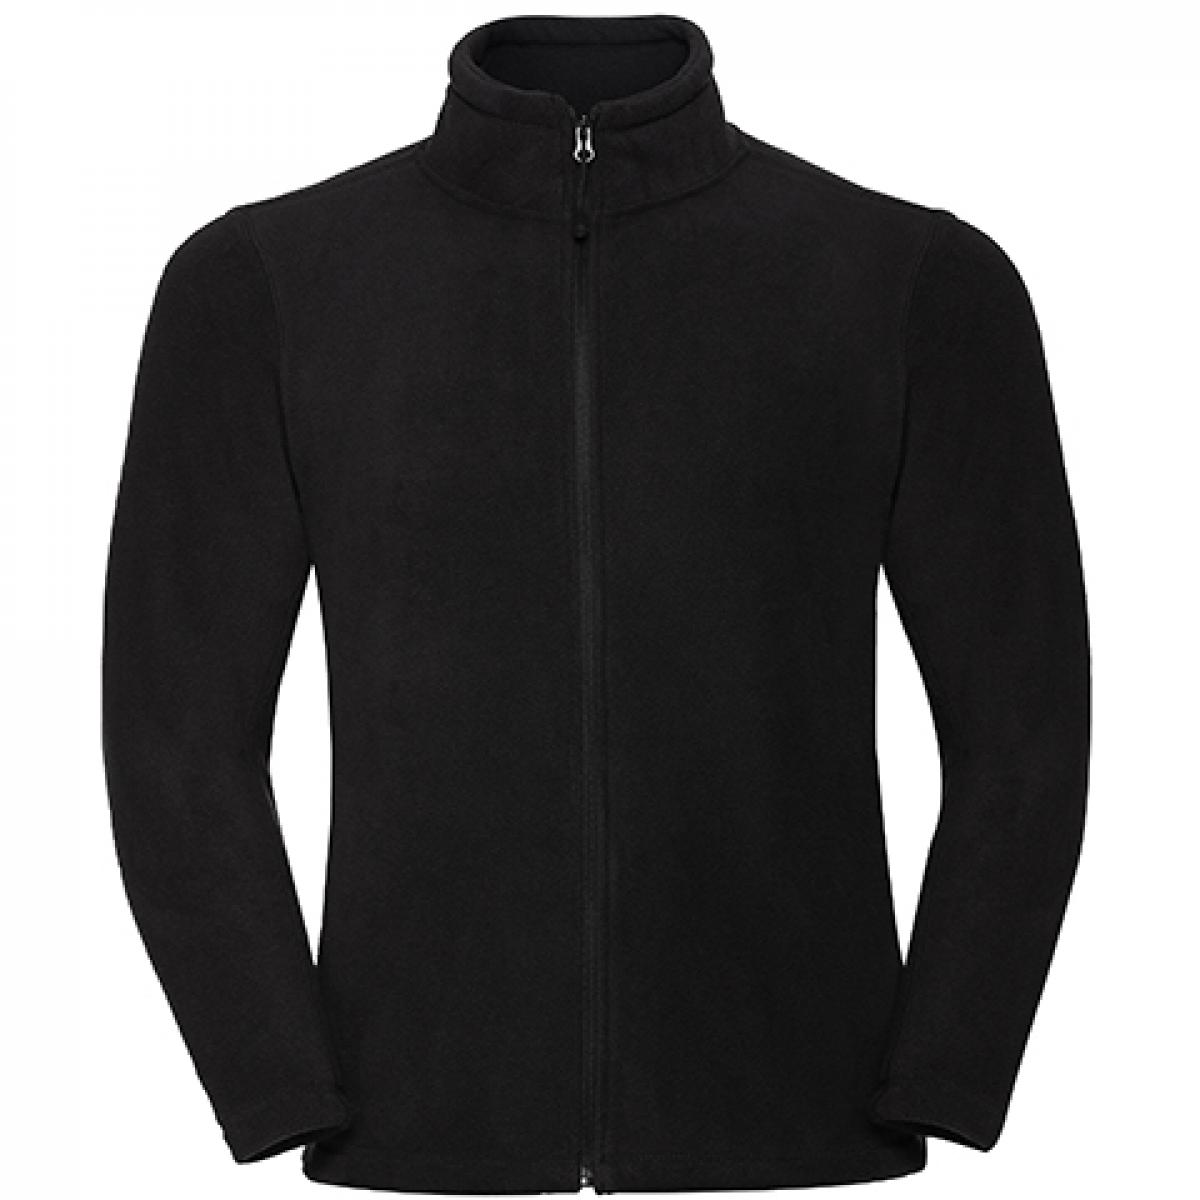 Hersteller: Russell Herstellernummer: R-870M-0 Artikelbezeichnung: Outdoor Fleece Full-Zip Farbe: Black